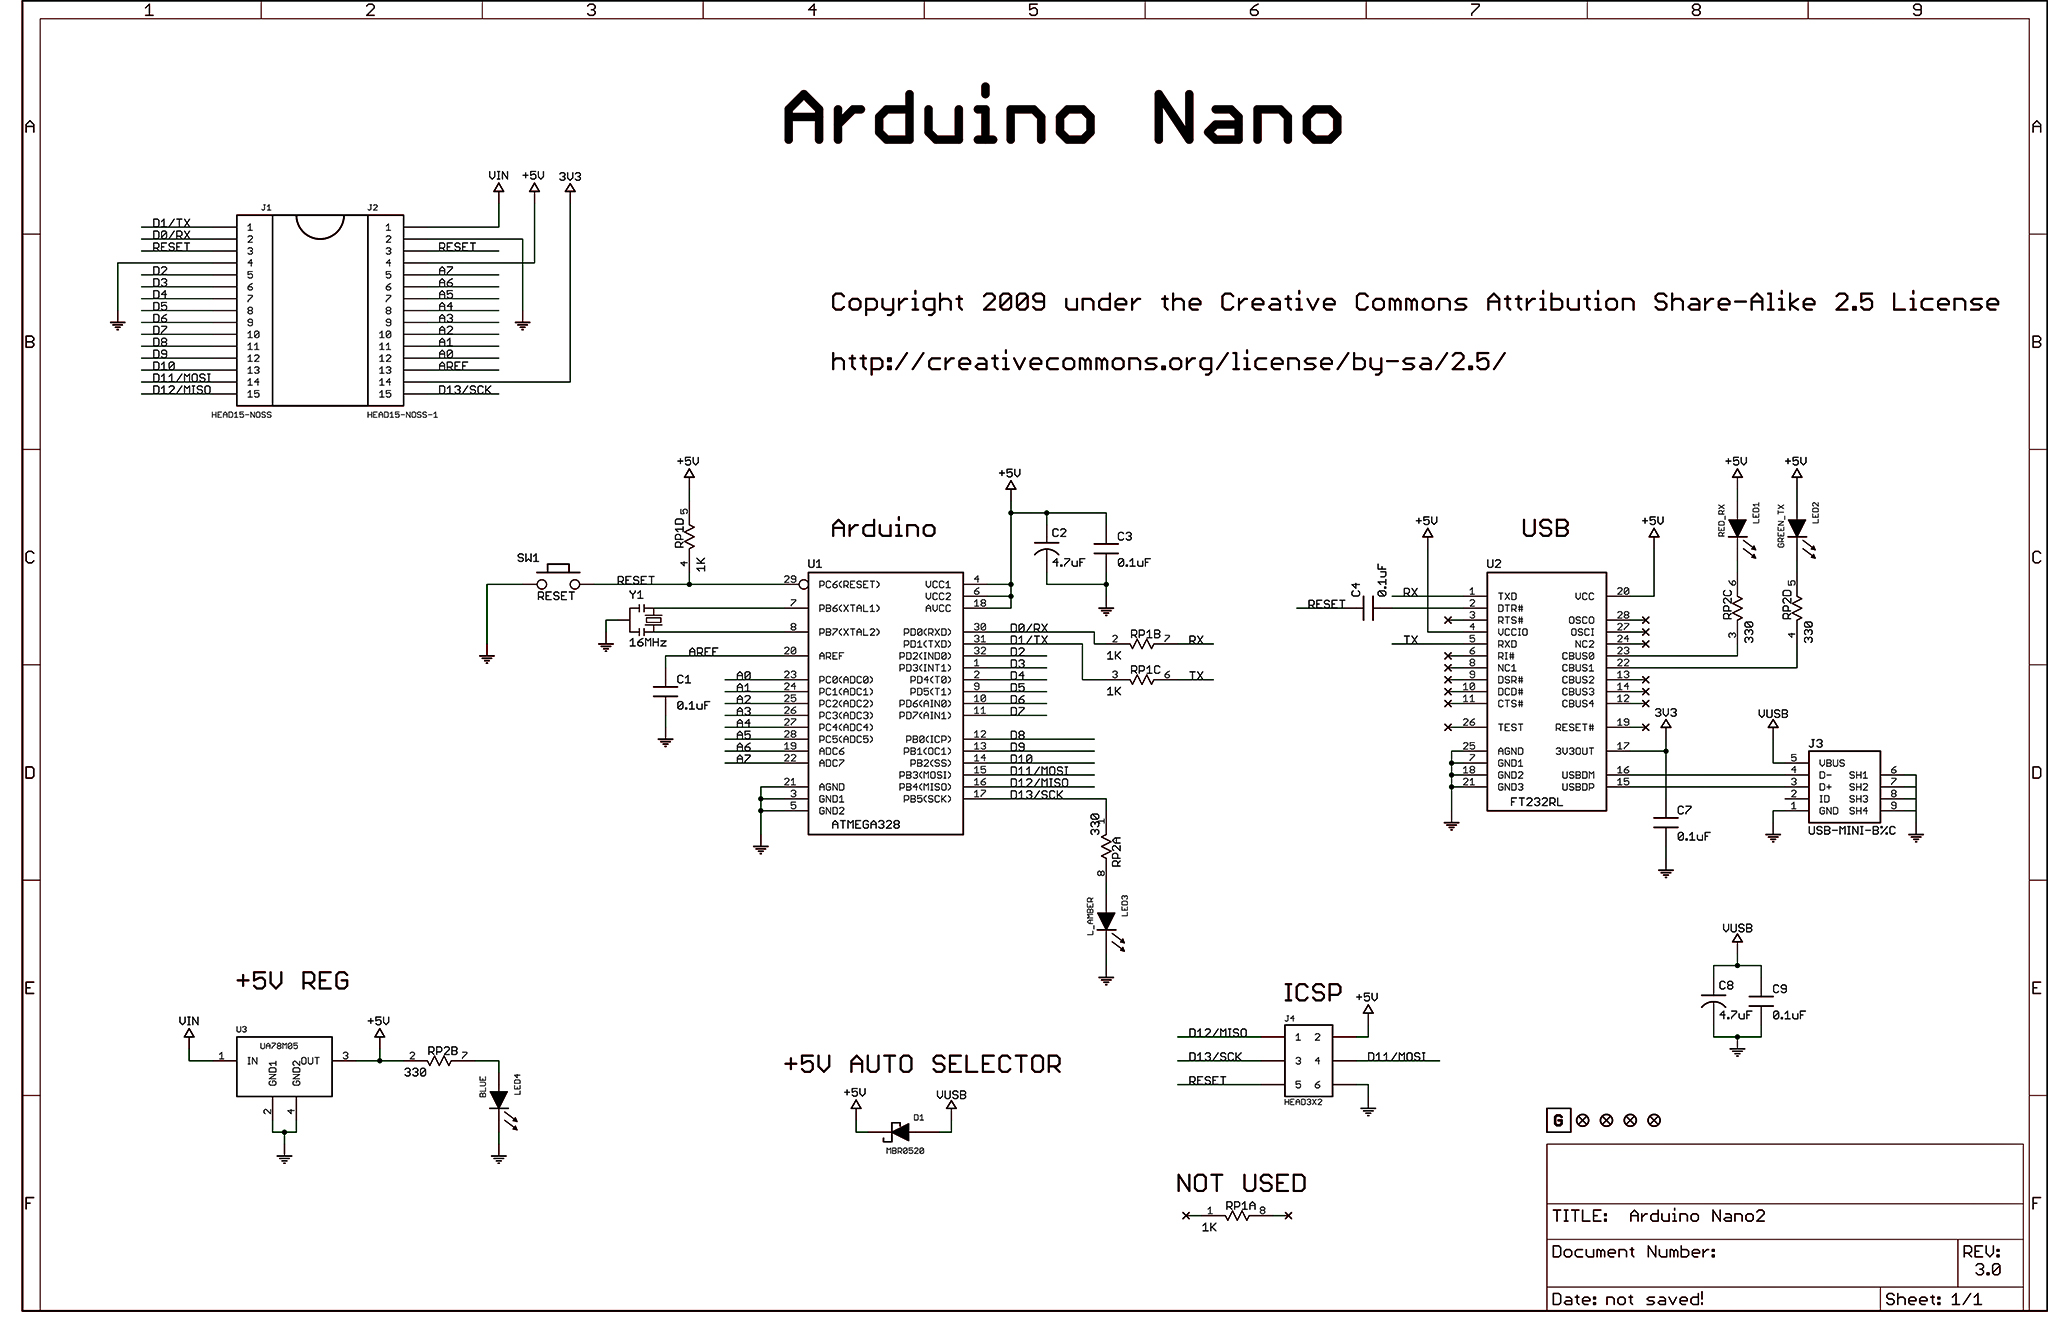 ArduinoNano30Schematic.jpg